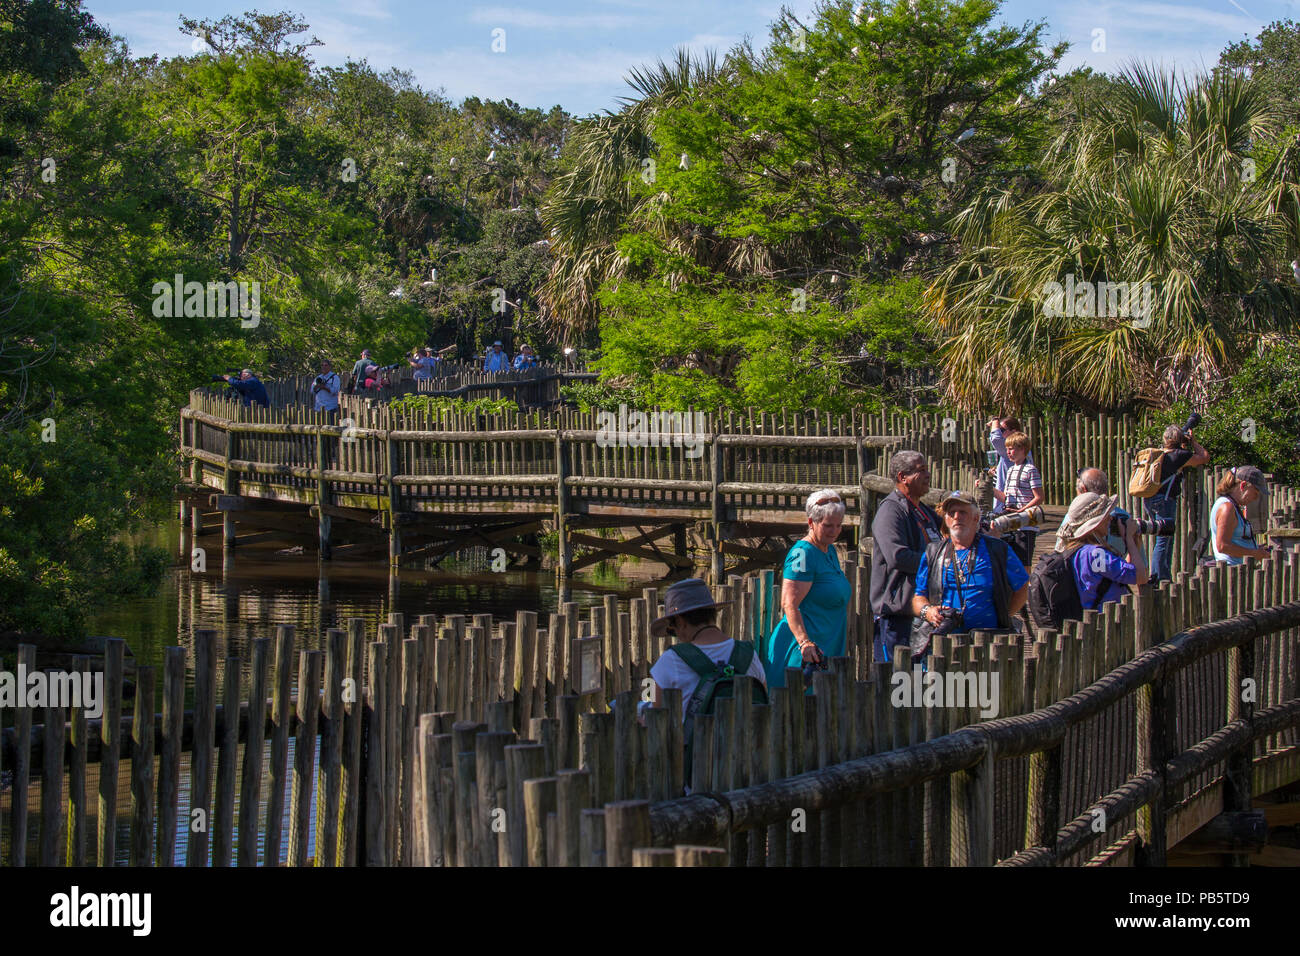 Promenade dans les marais & bird rookery à Saint Augustine Alligator Farm Zoological Park à St Augustine en Floride Banque D'Images